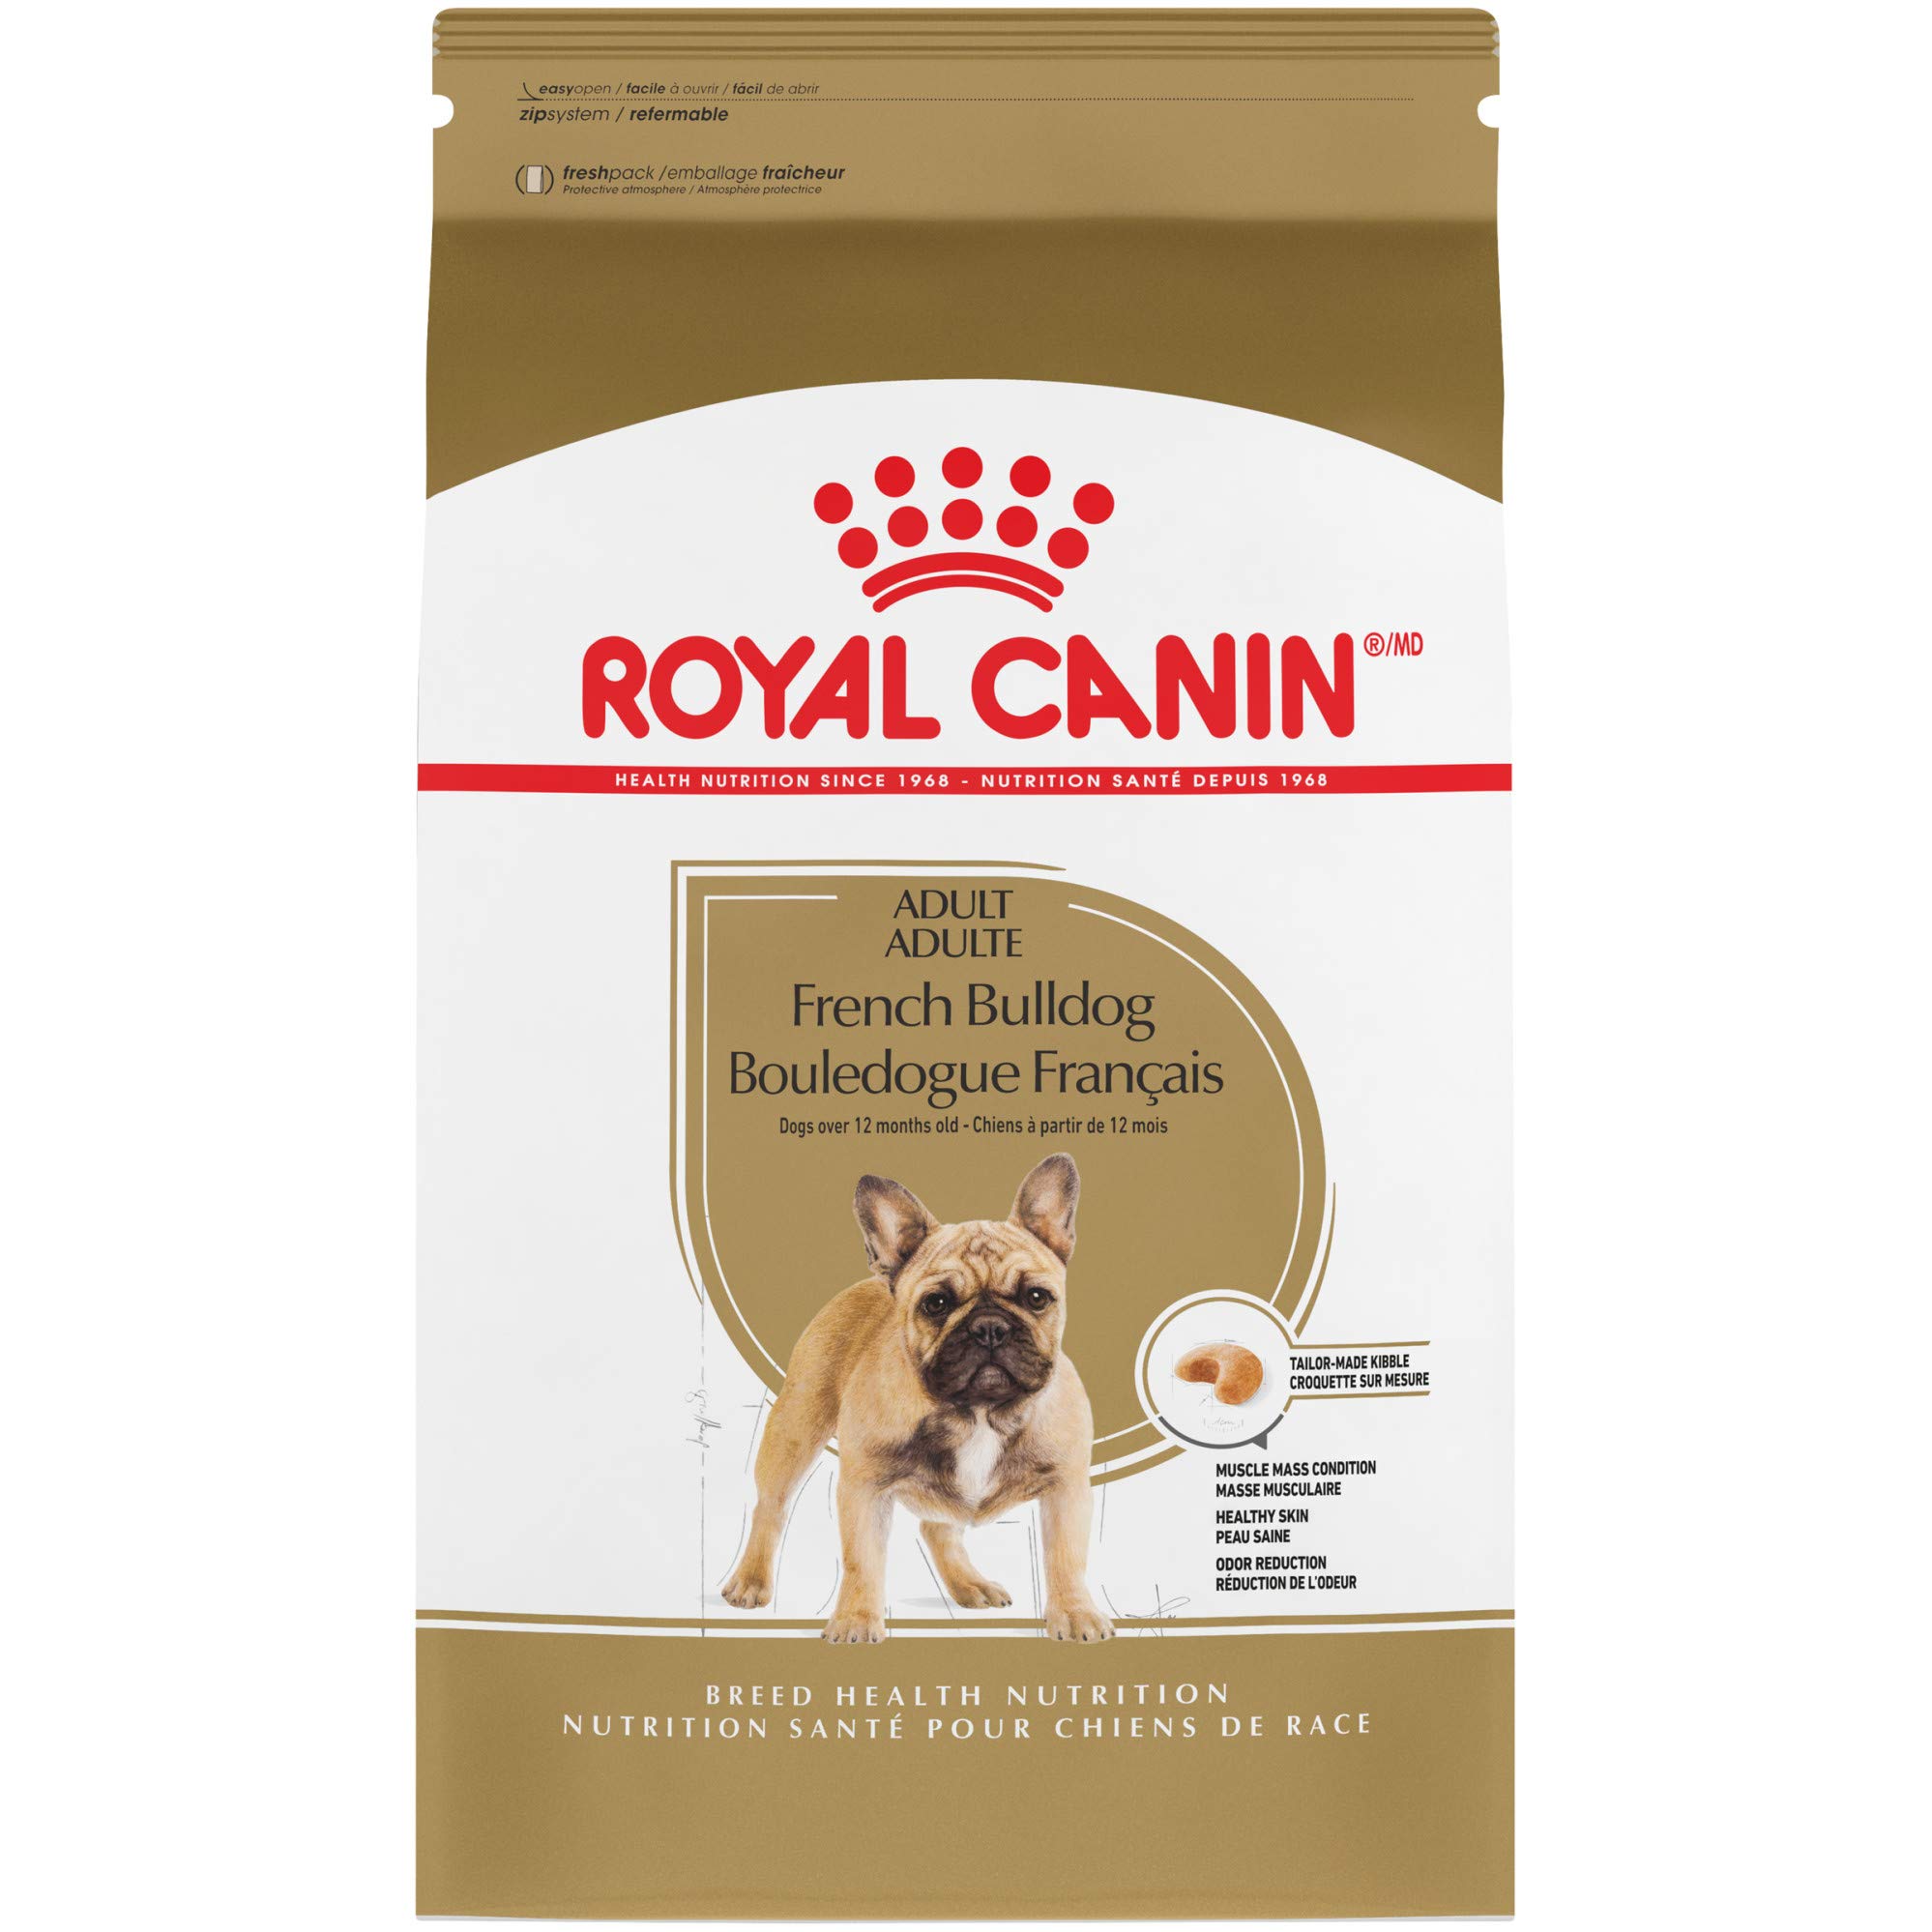 Royal Canin नस्ल स्वास्थ्य पोषण फ्रेंच बुलडॉग वयस्क सूख...